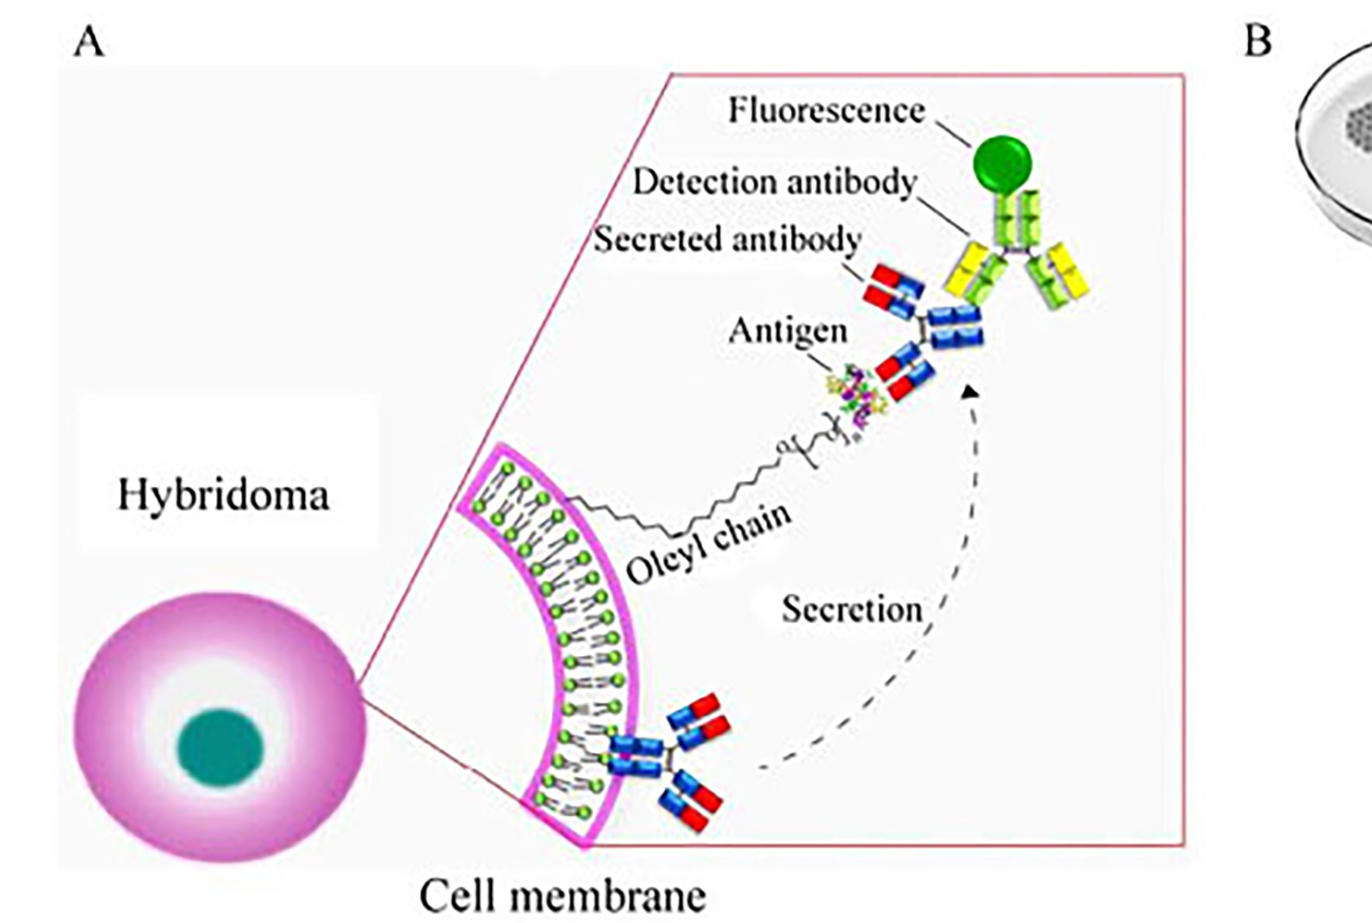 图 2 细胞膜荧光免疫吸附测定法原理图(A) 及操作过程示意图(B).png